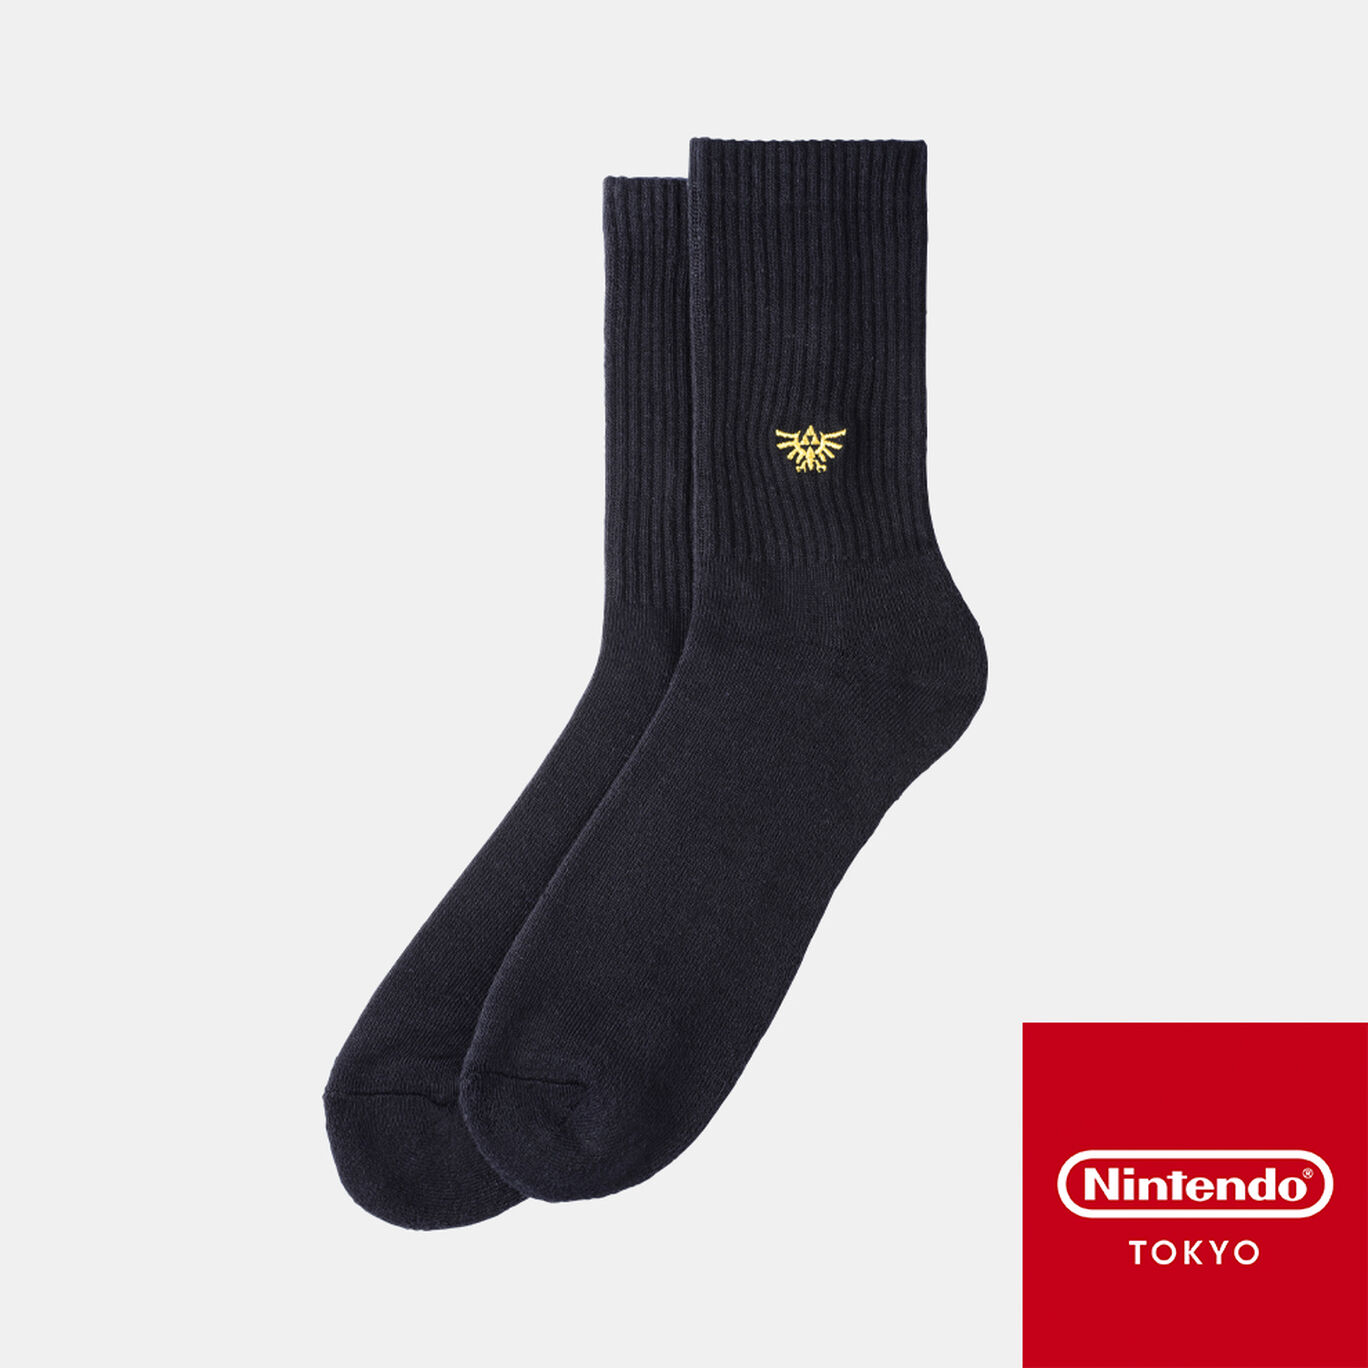 靴下 ハイラルの紋章 ブラック ゼルダの伝説 Nintendo Tokyo取り扱い商品 My Nintendo Store マイニンテンドーストア